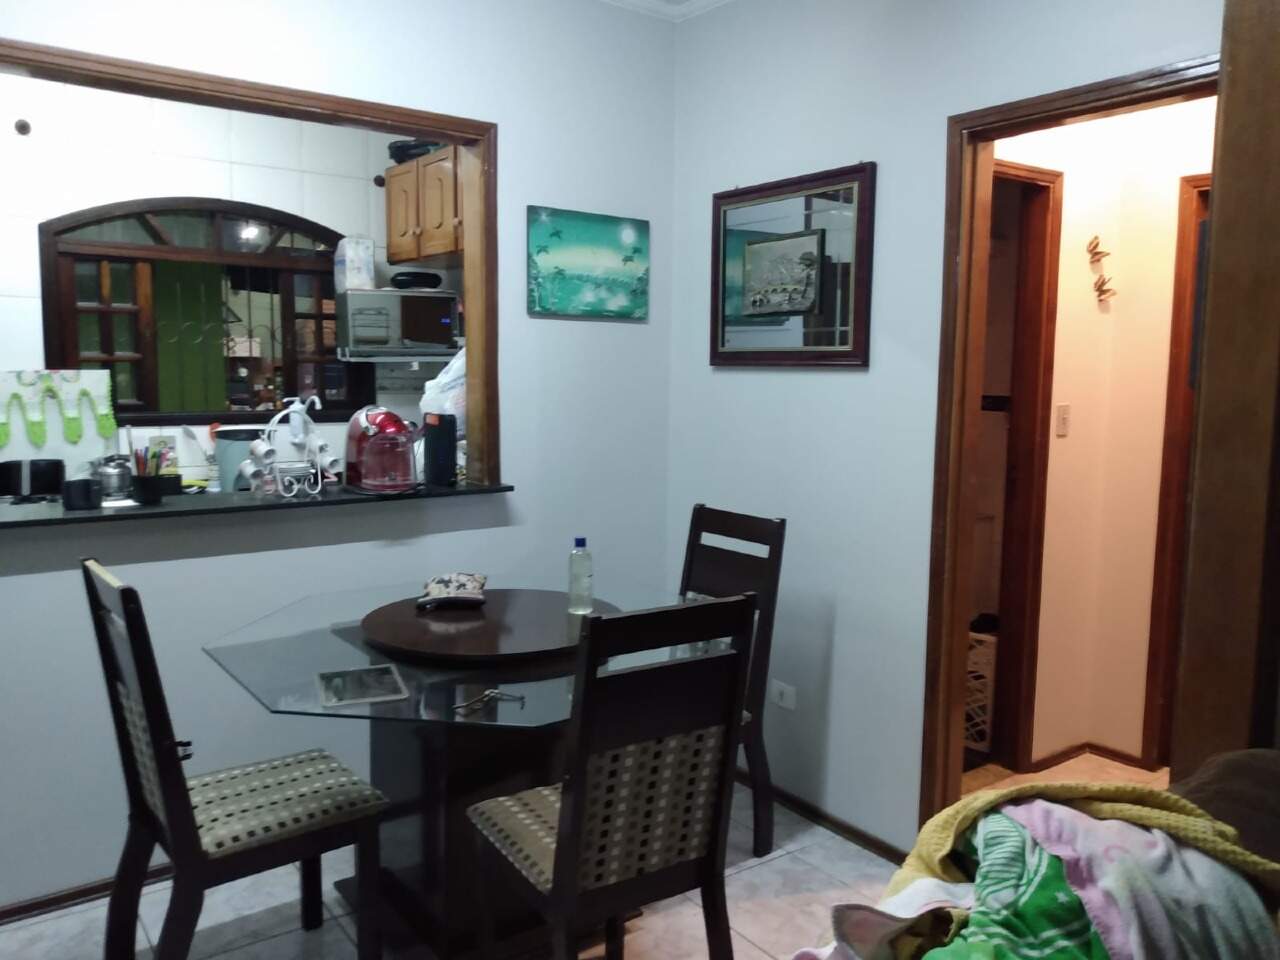 Casa à venda, 2 quartos, sendo 1 suíte, no bairro Dois Córregos em Piracicaba - SP